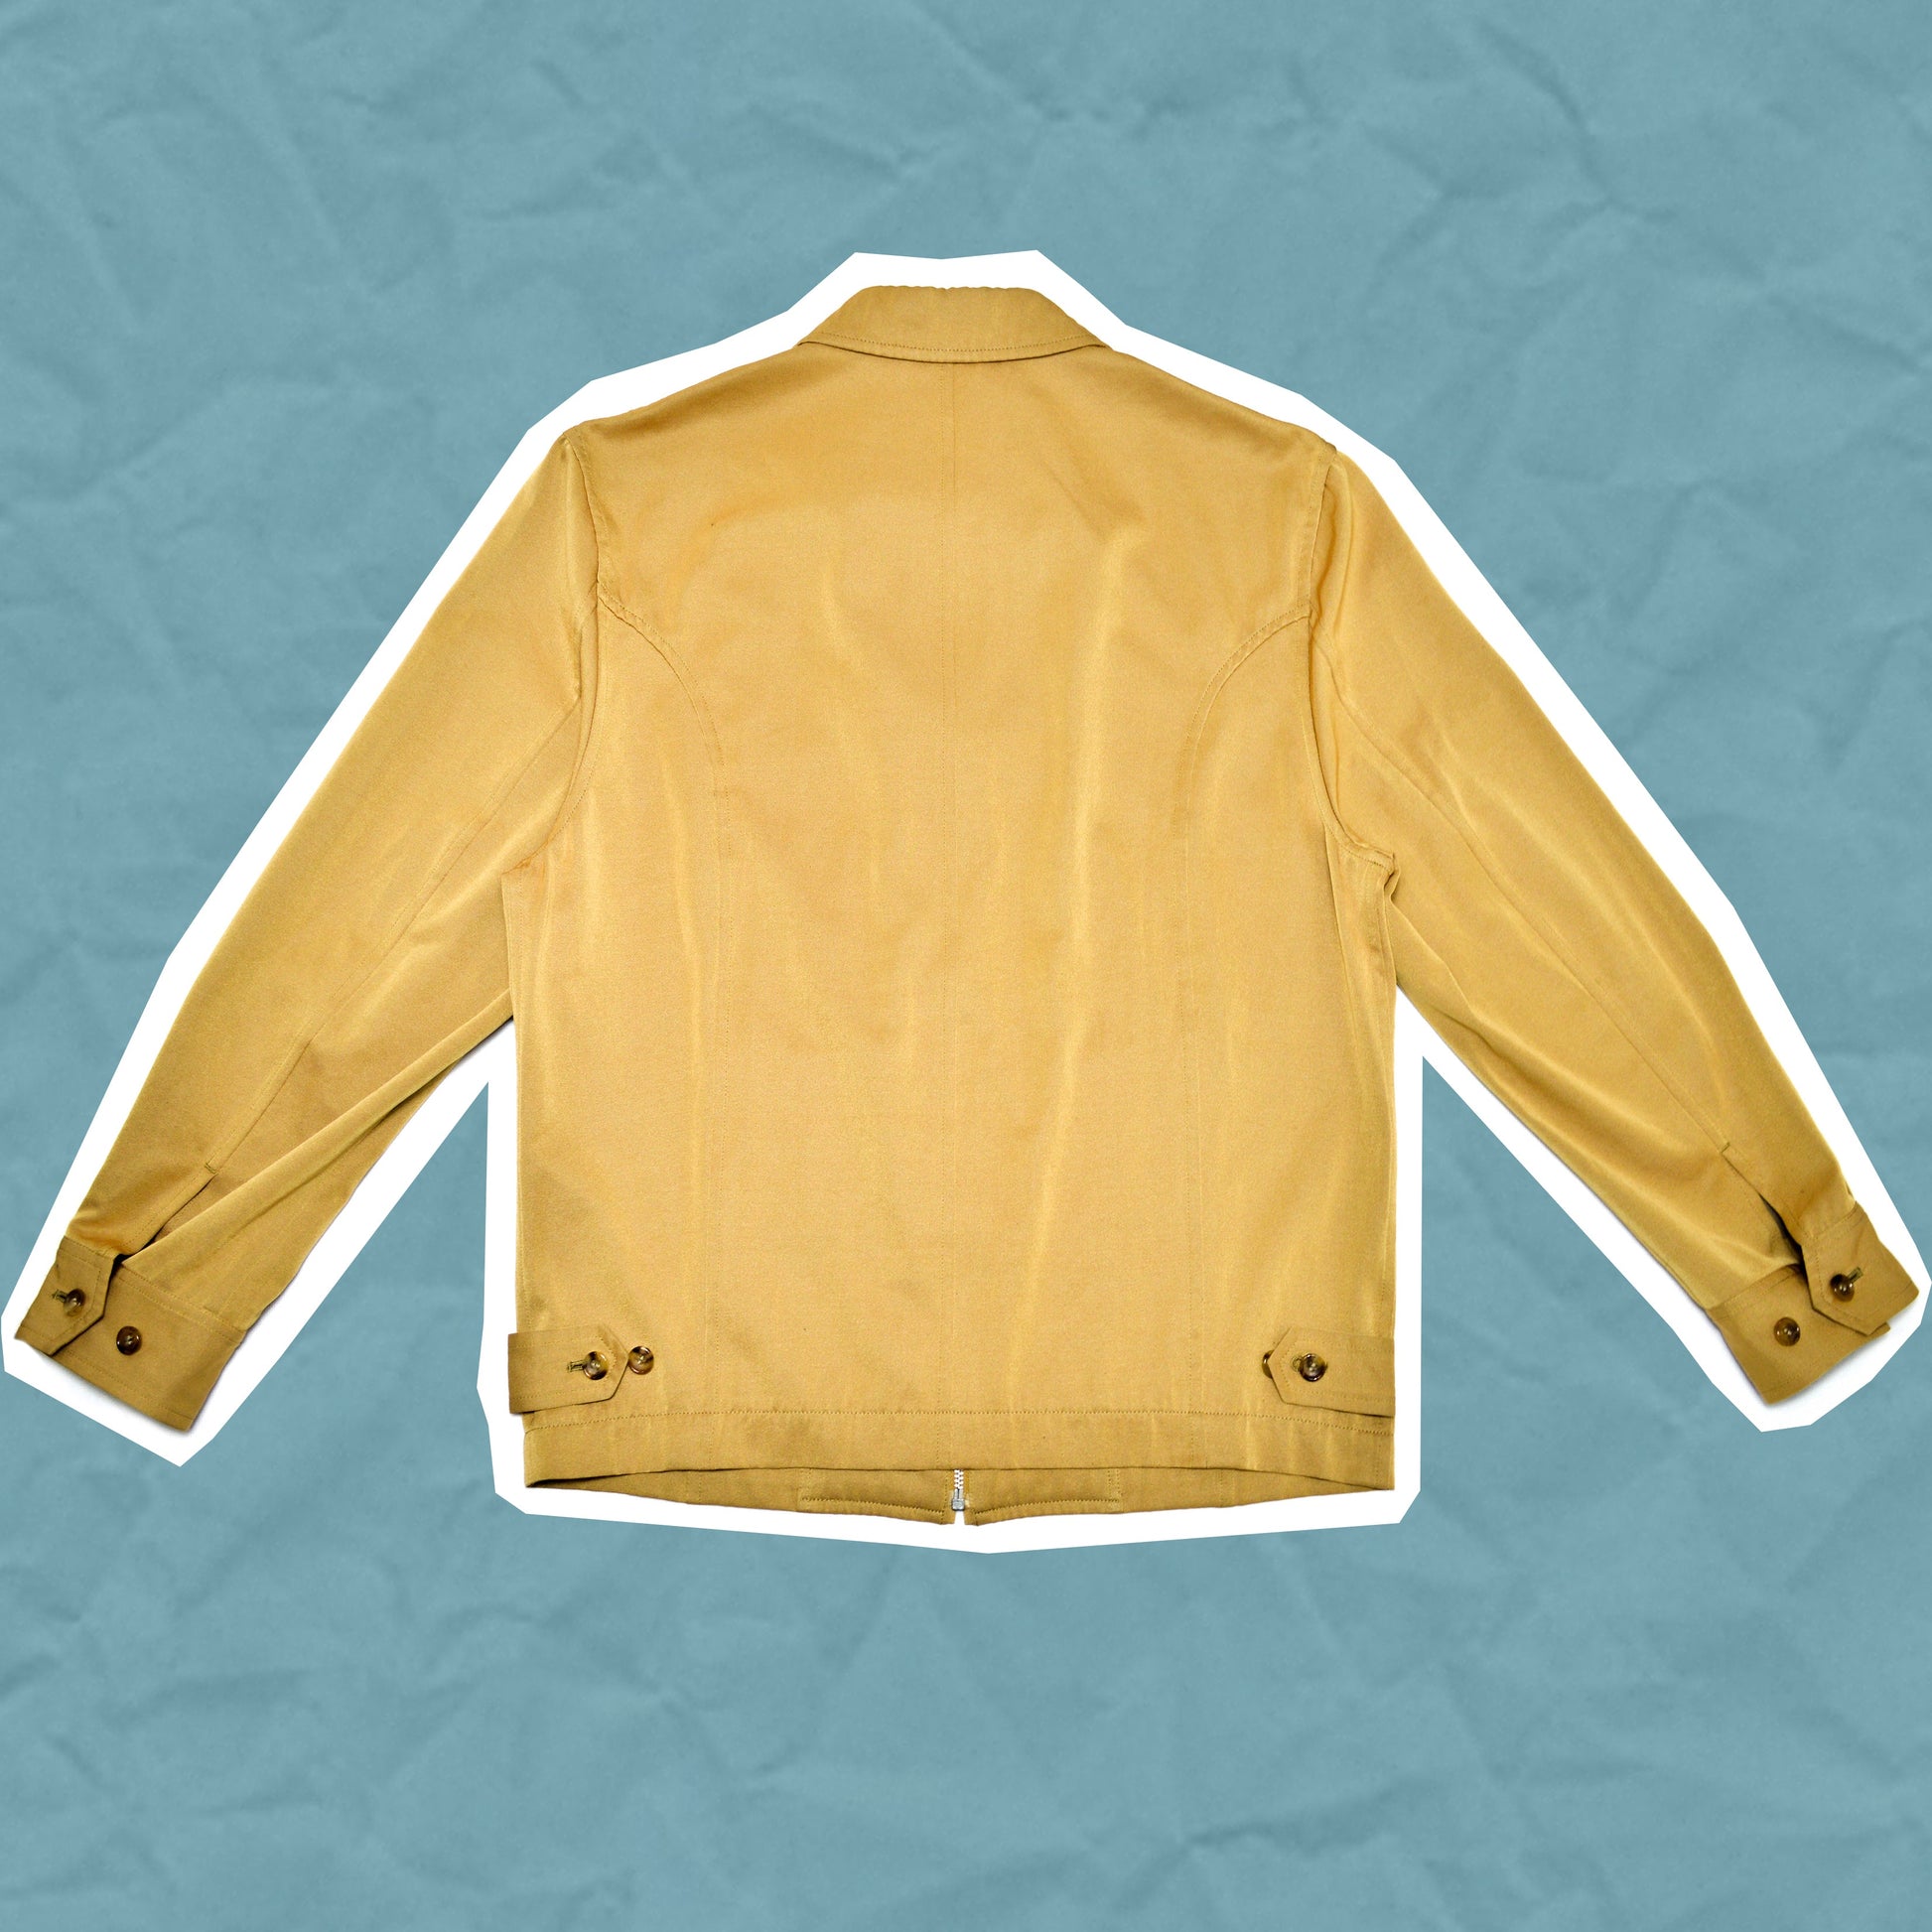 Comme Des Garçons Homme Plus 1998 Gold Rayon / Polyester Blend Jacket (M)